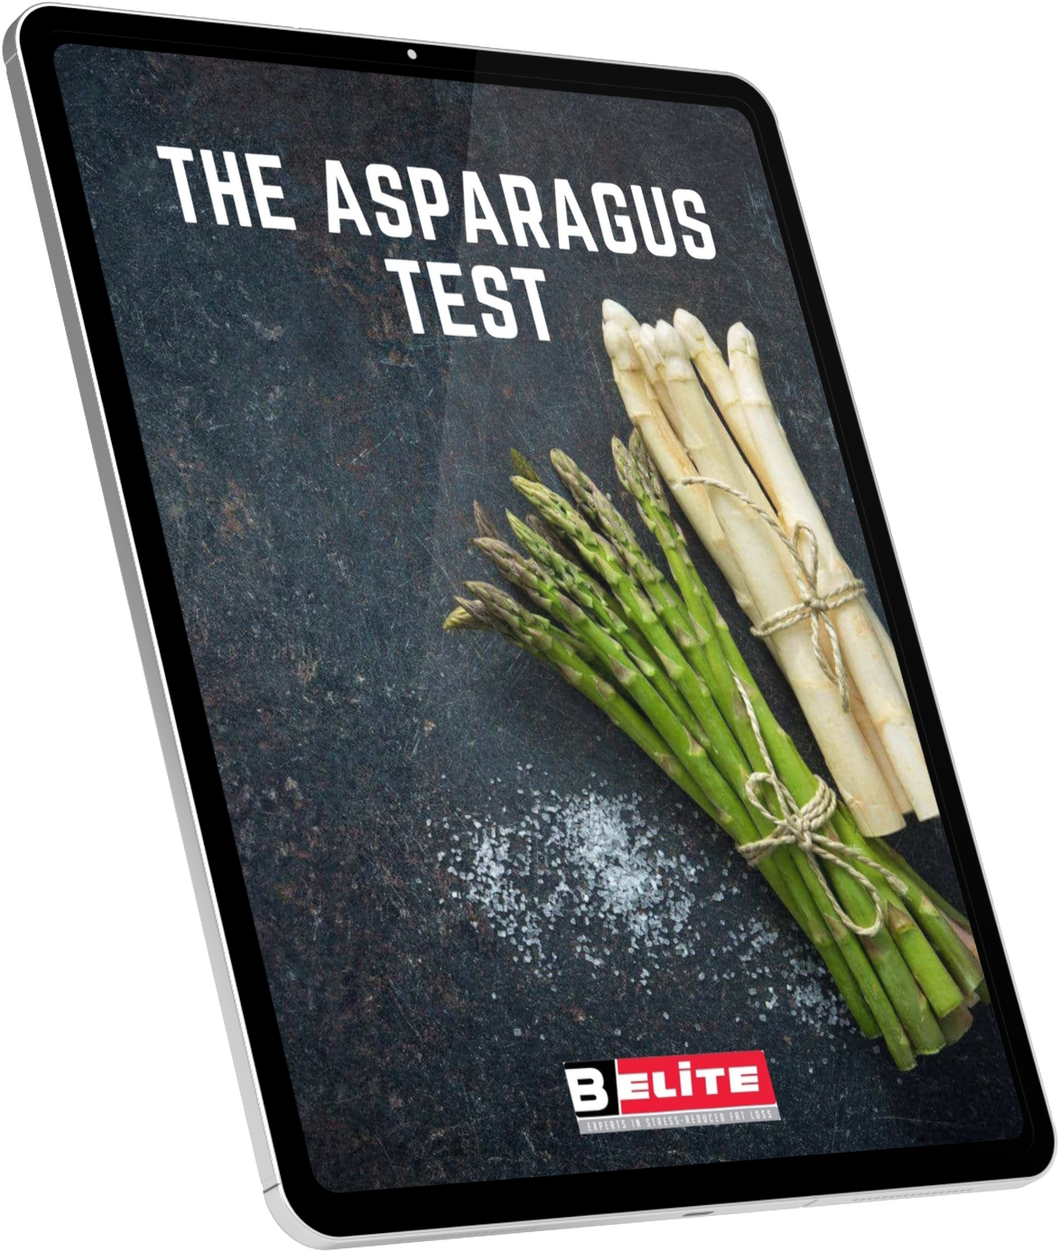 The Asparagus Test